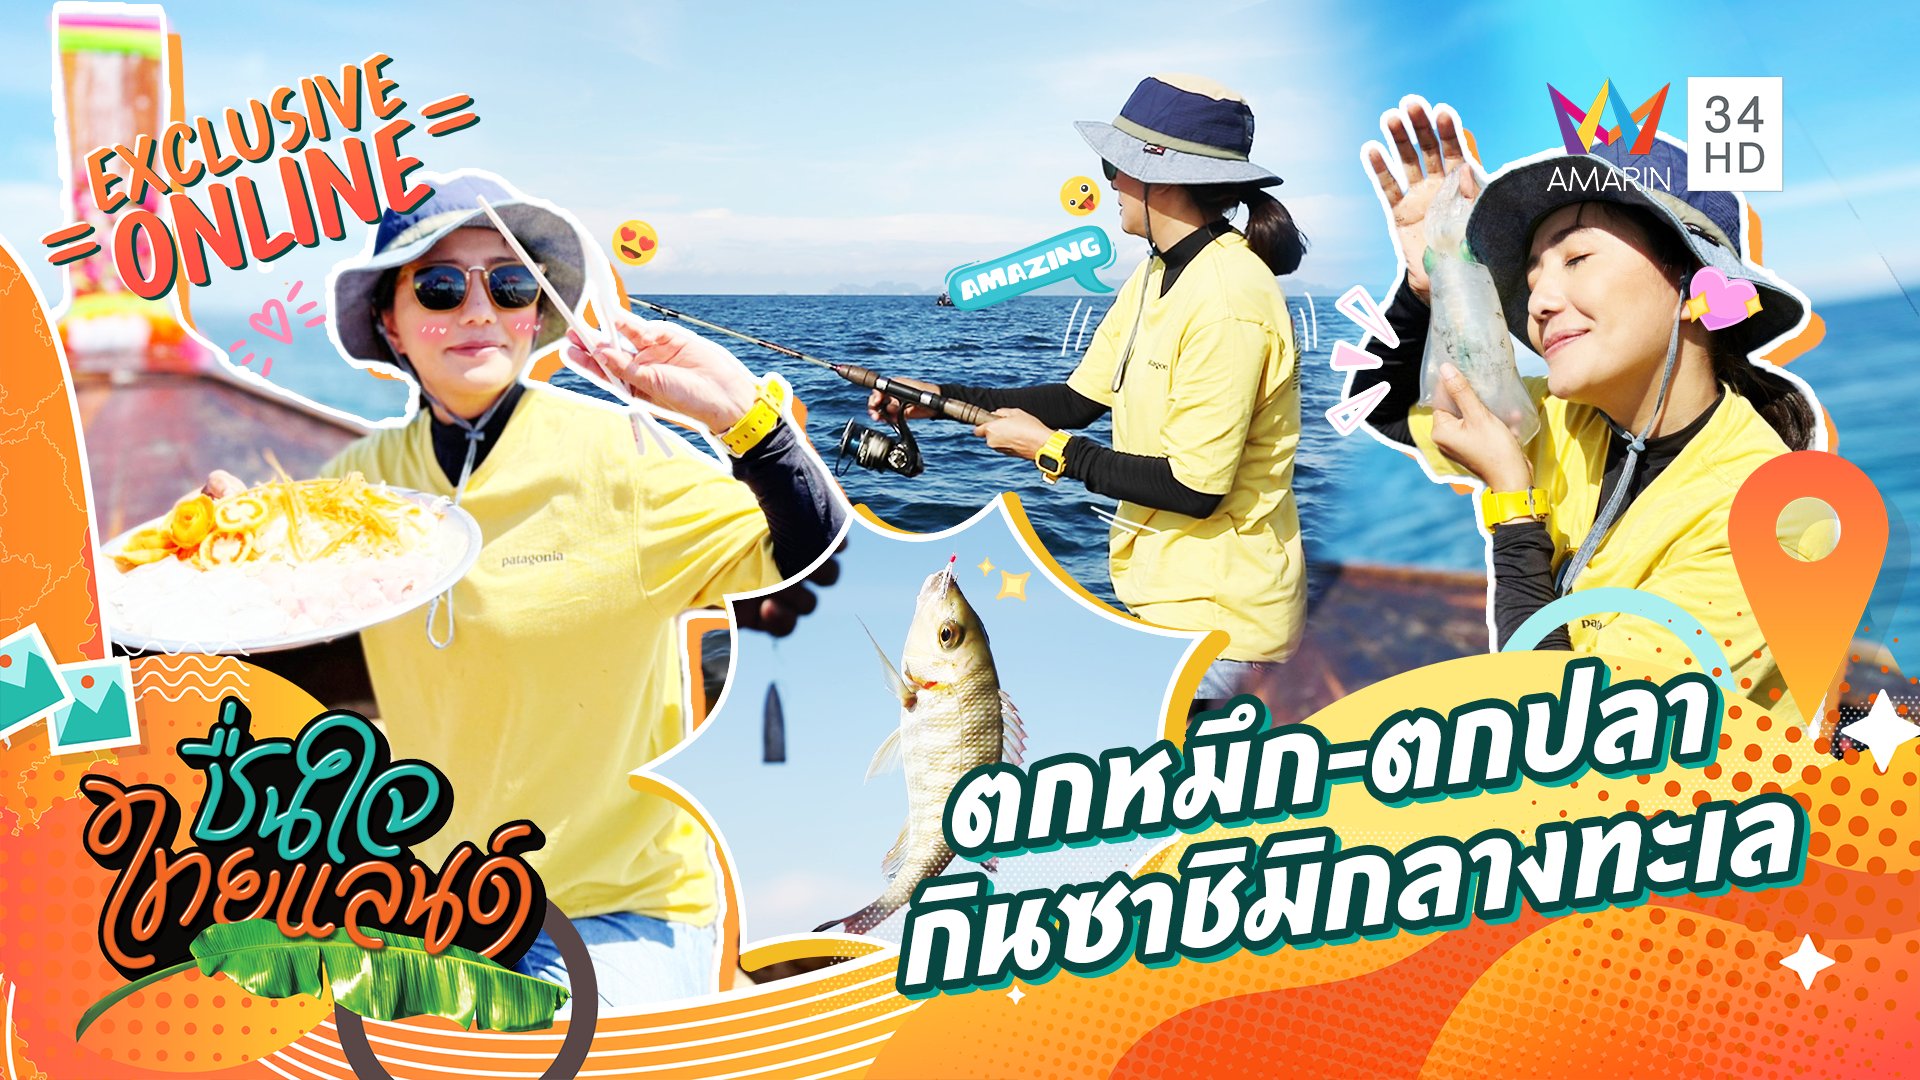 ลงเรือตกหมึก-ตกปลา กินซาชิมิกันสดๆ กลางทะเล บอกเลยฟินสุดๆ | ชื่นใจไทยแลนด์ | 7 ก.ย. 65 | AMARIN TVHD34